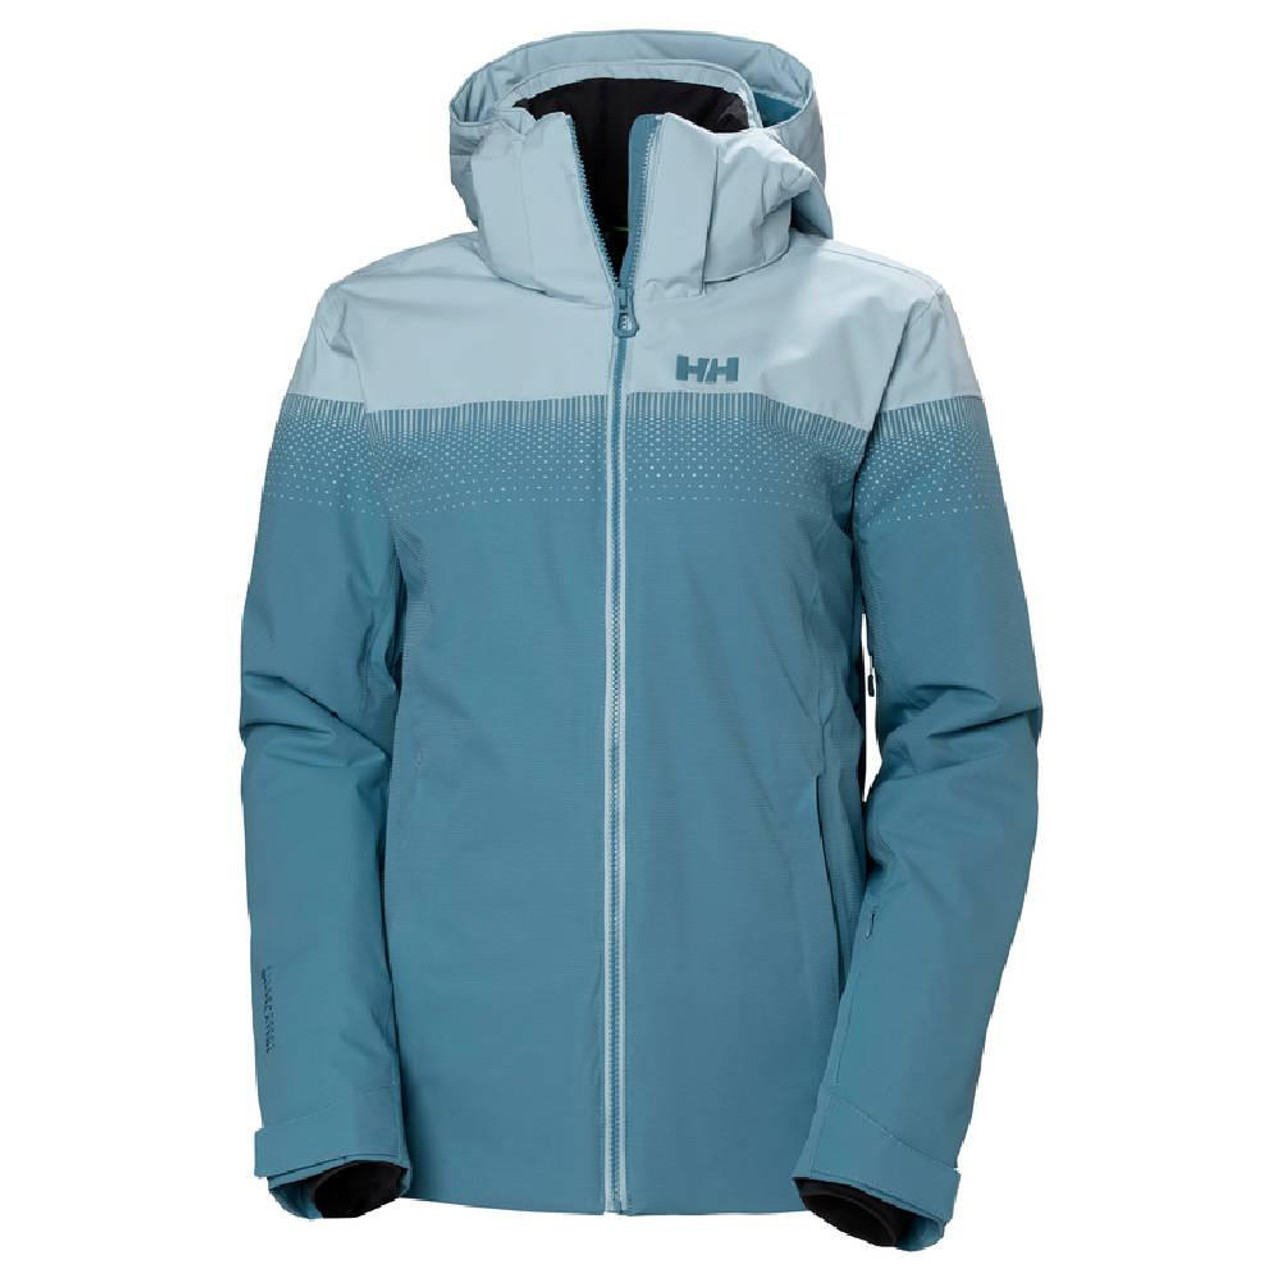 Women's Helly Hansen Valdisere 2.0 (Darkest Spruce) ski jacket